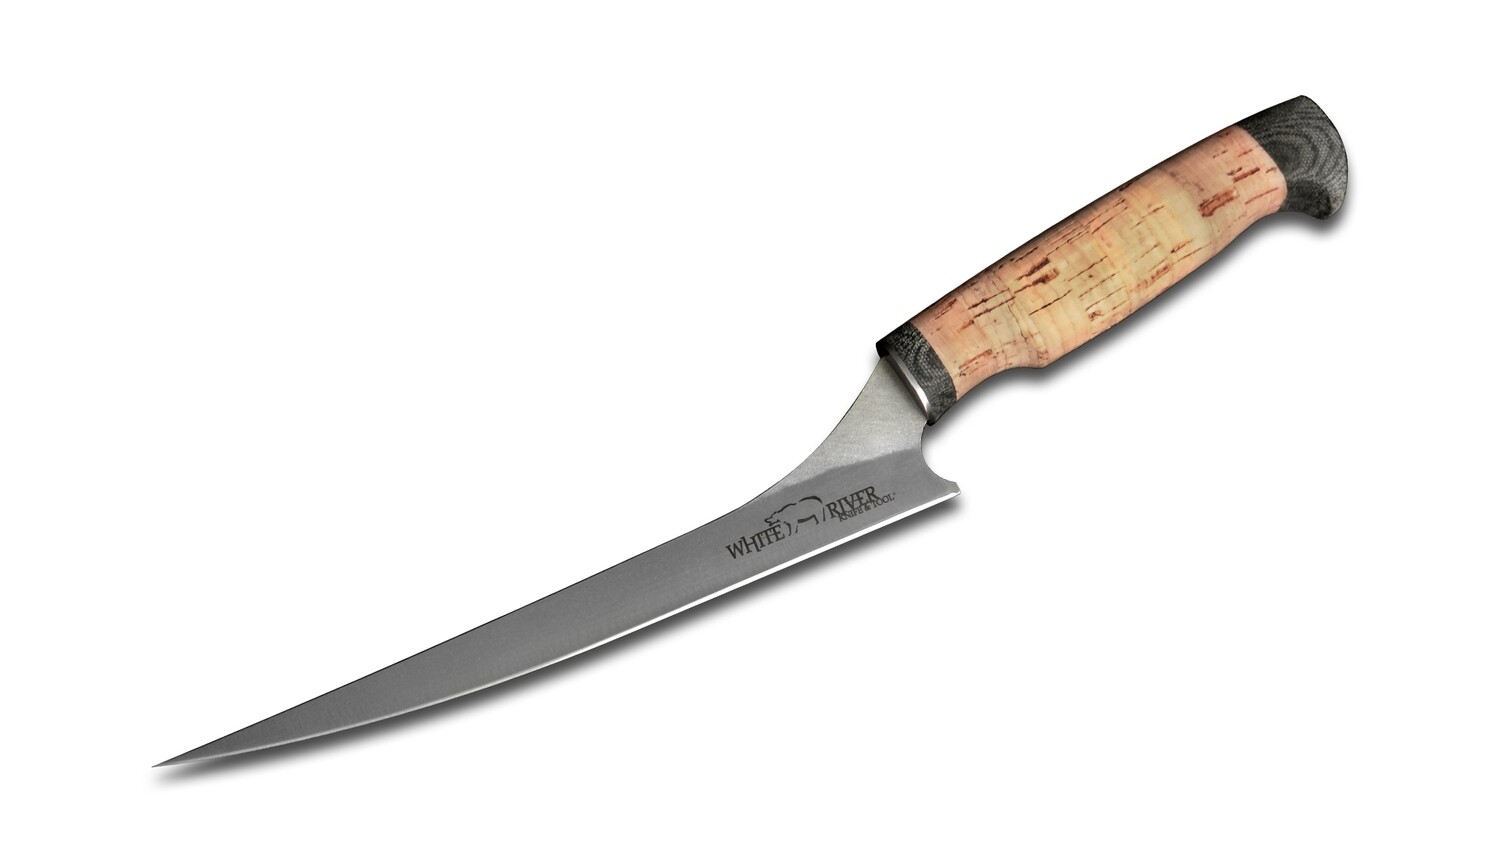 White River Step-up Fillet Knife — 8.5 inch, Cork